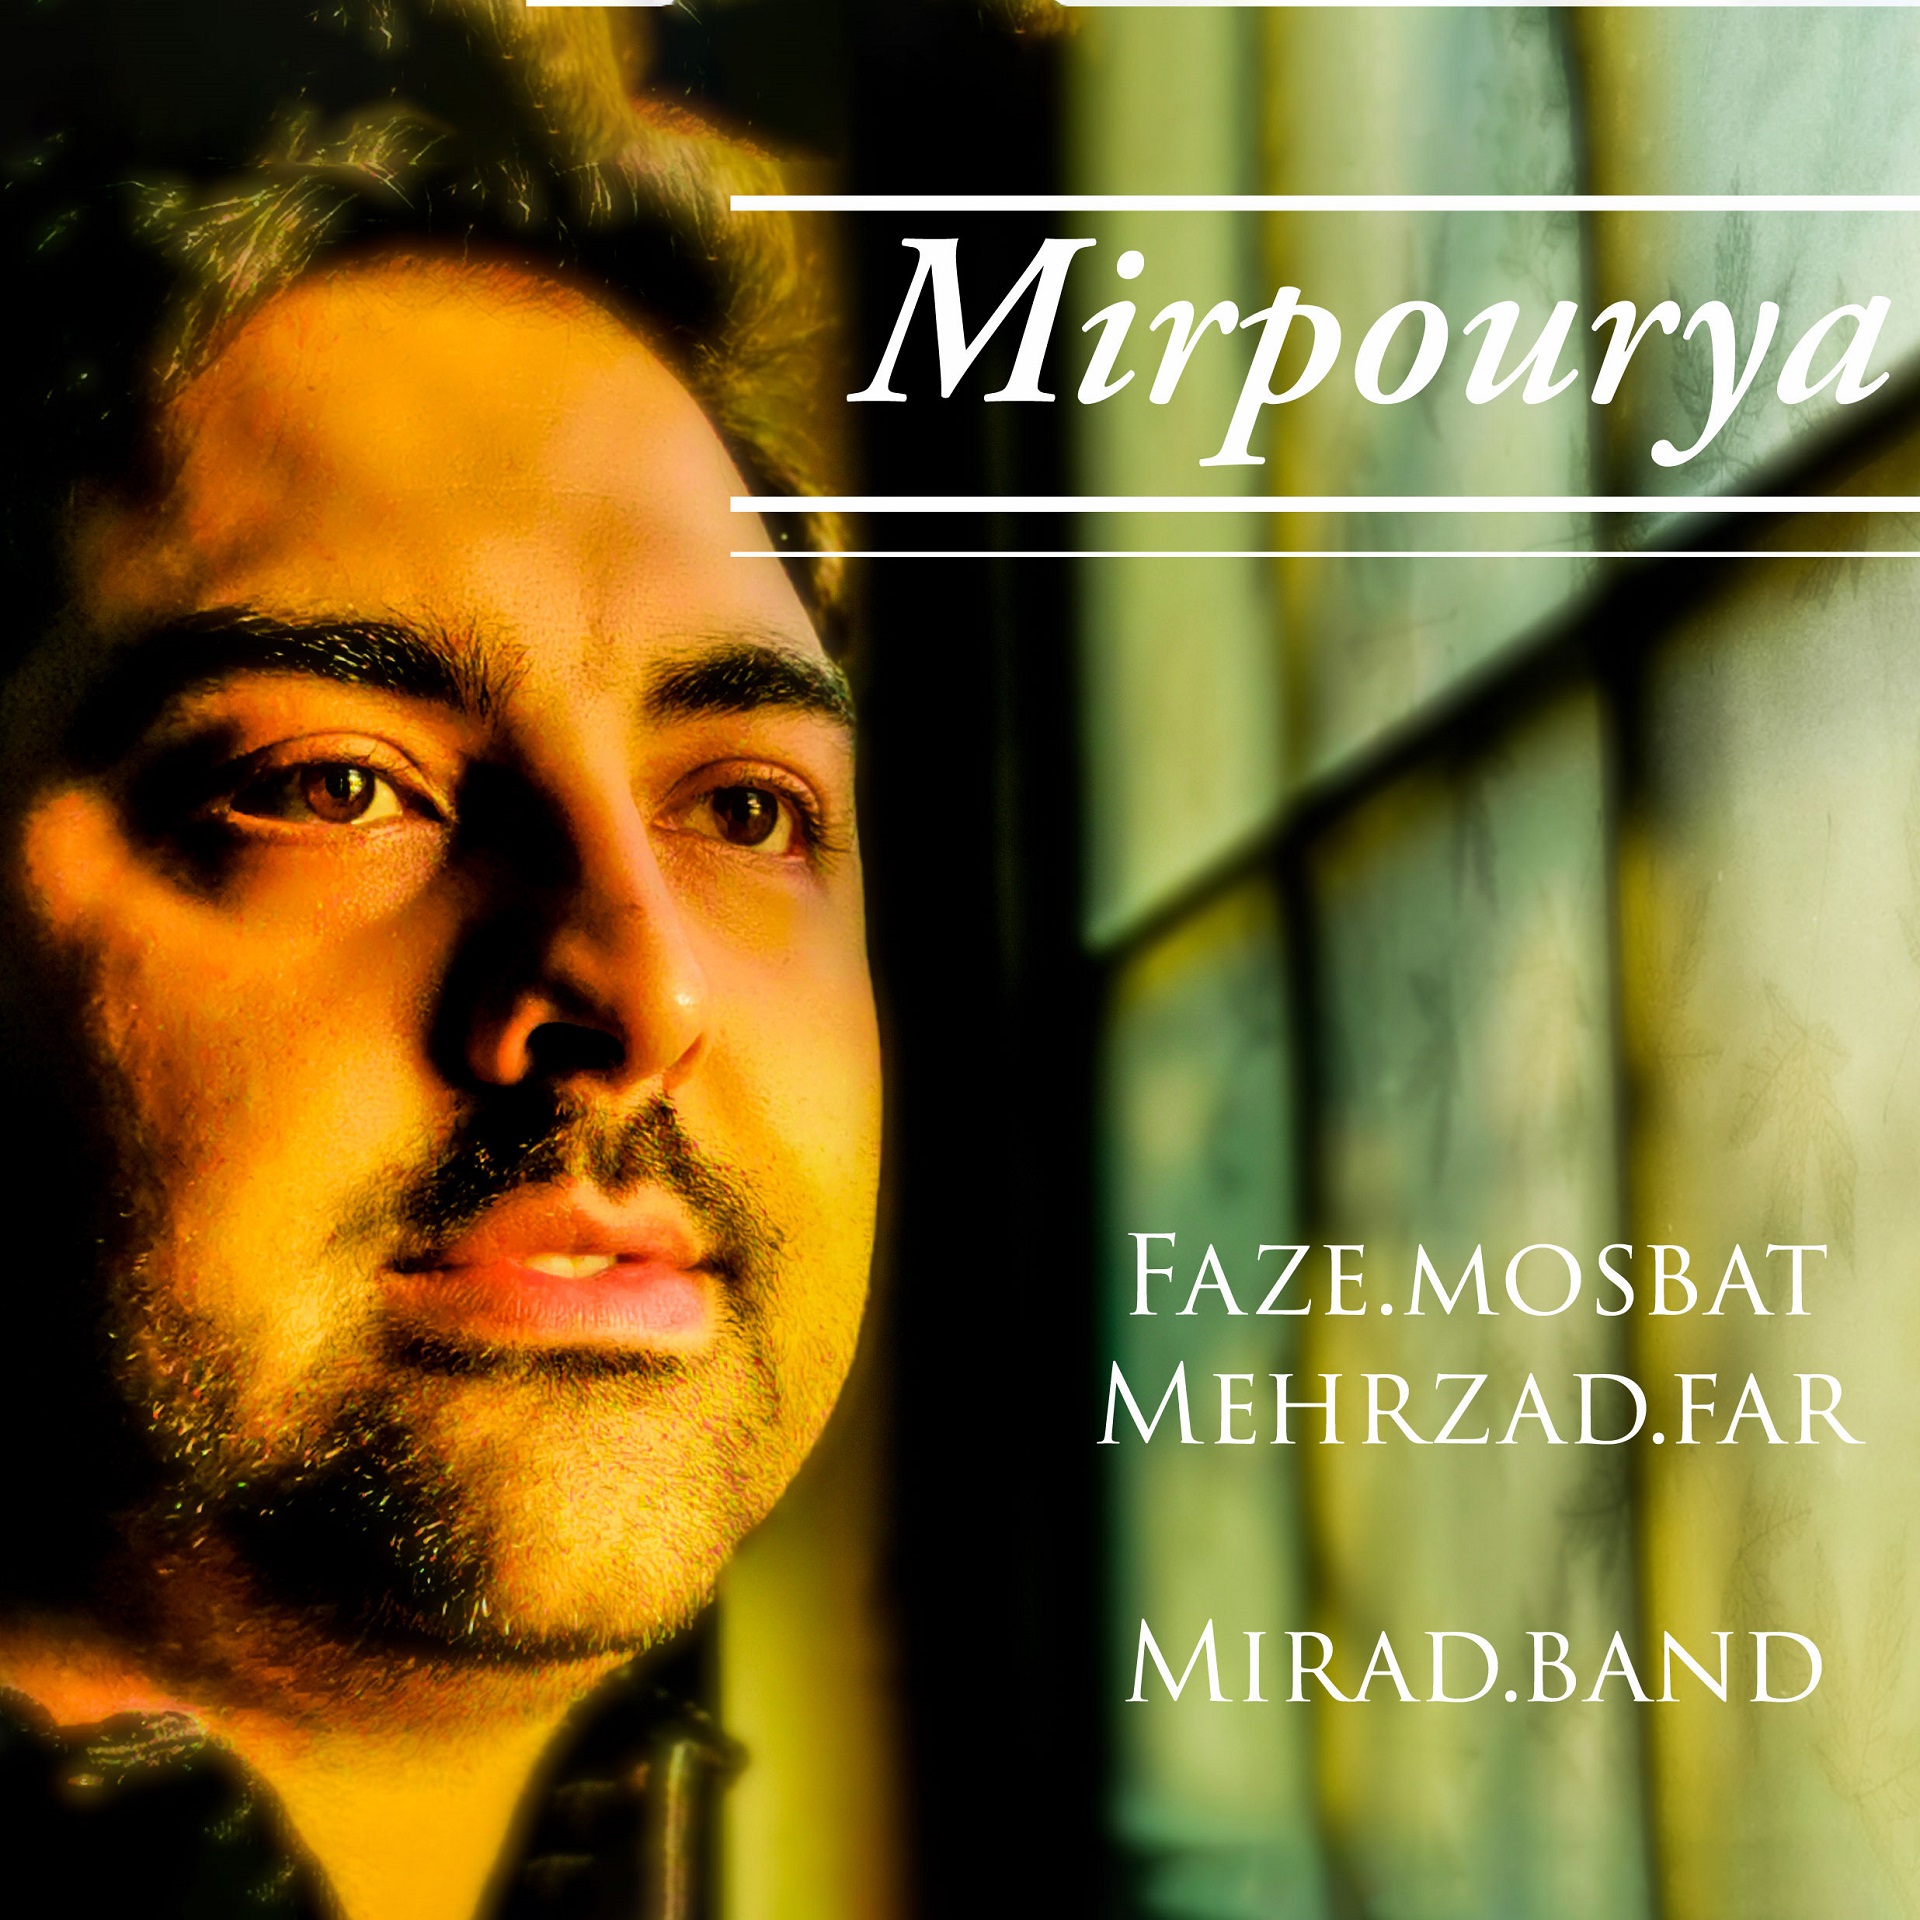  دانلود آهنگ جدید میر پوریا - فاز مثبت | Download New Music By Mir Pourya - Faze Mosbat